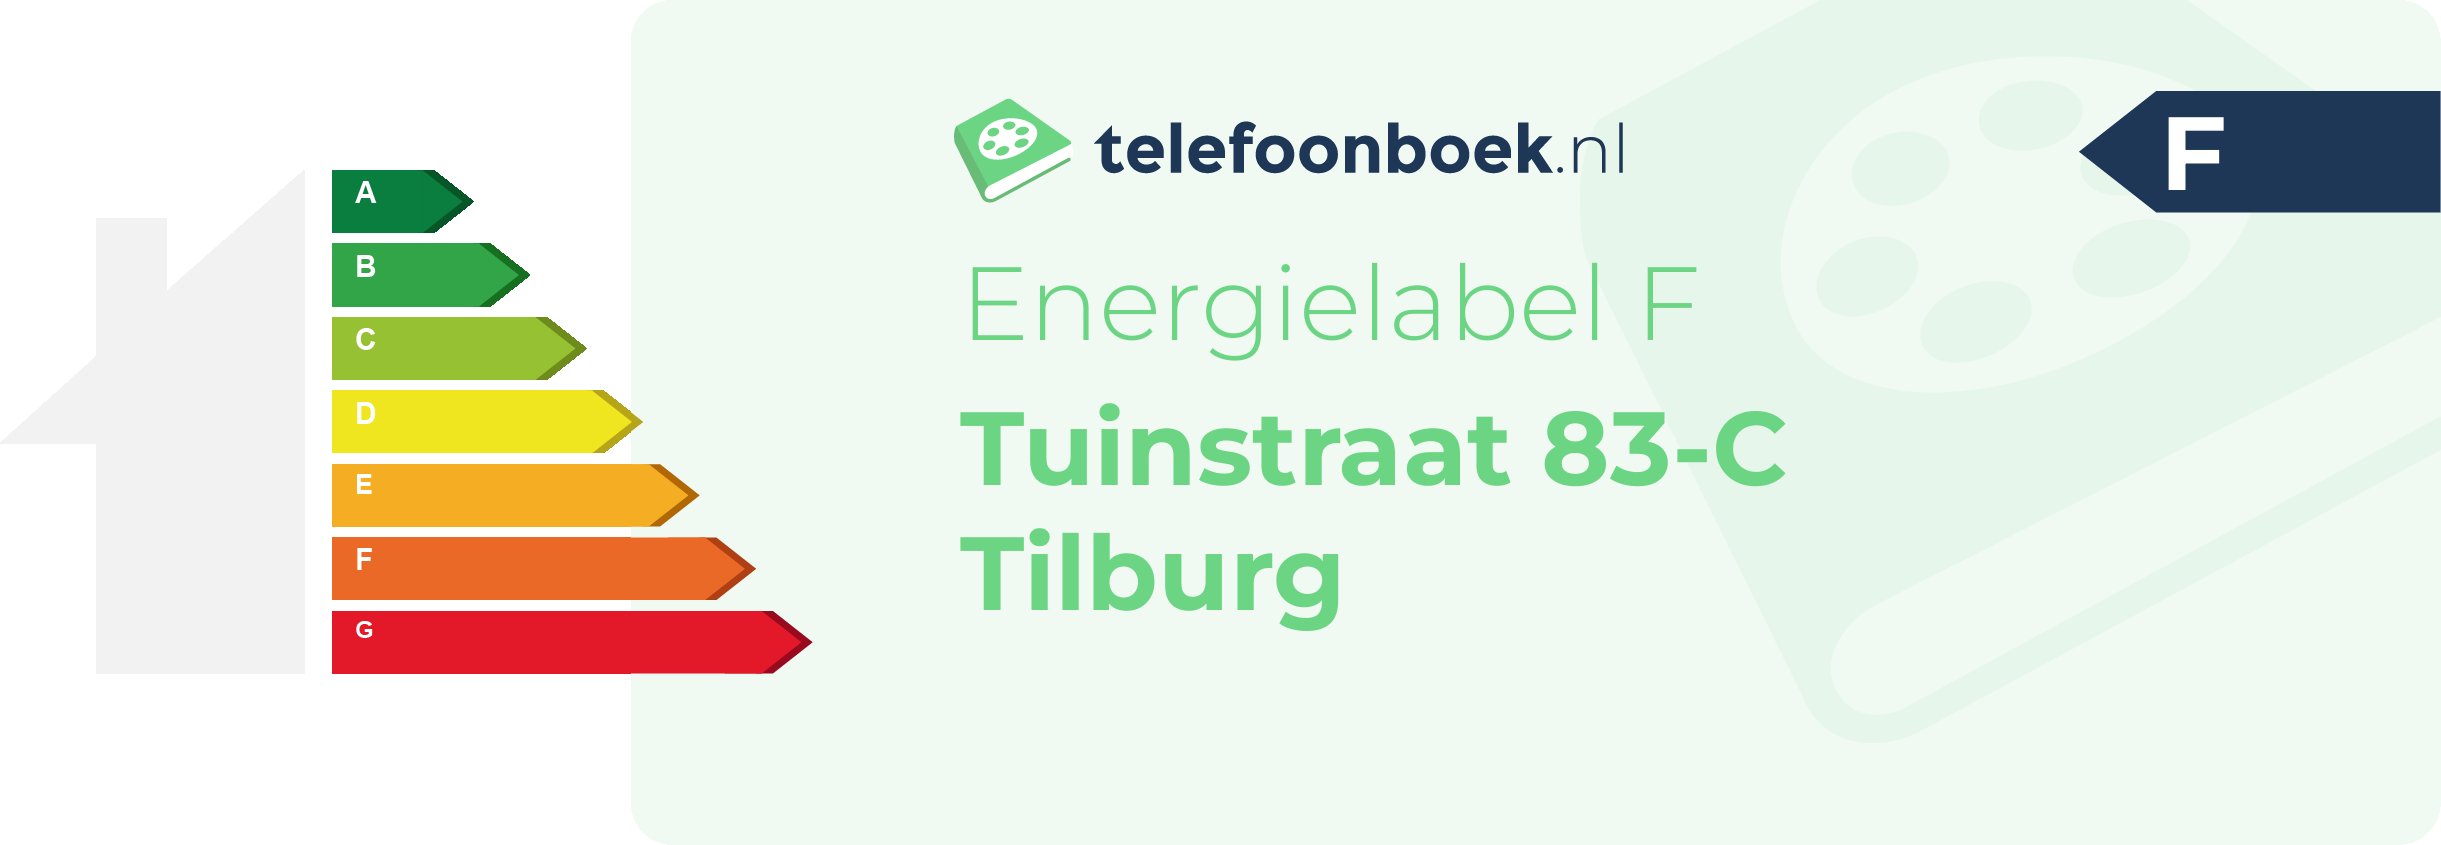 Energielabel Tuinstraat 83-C Tilburg